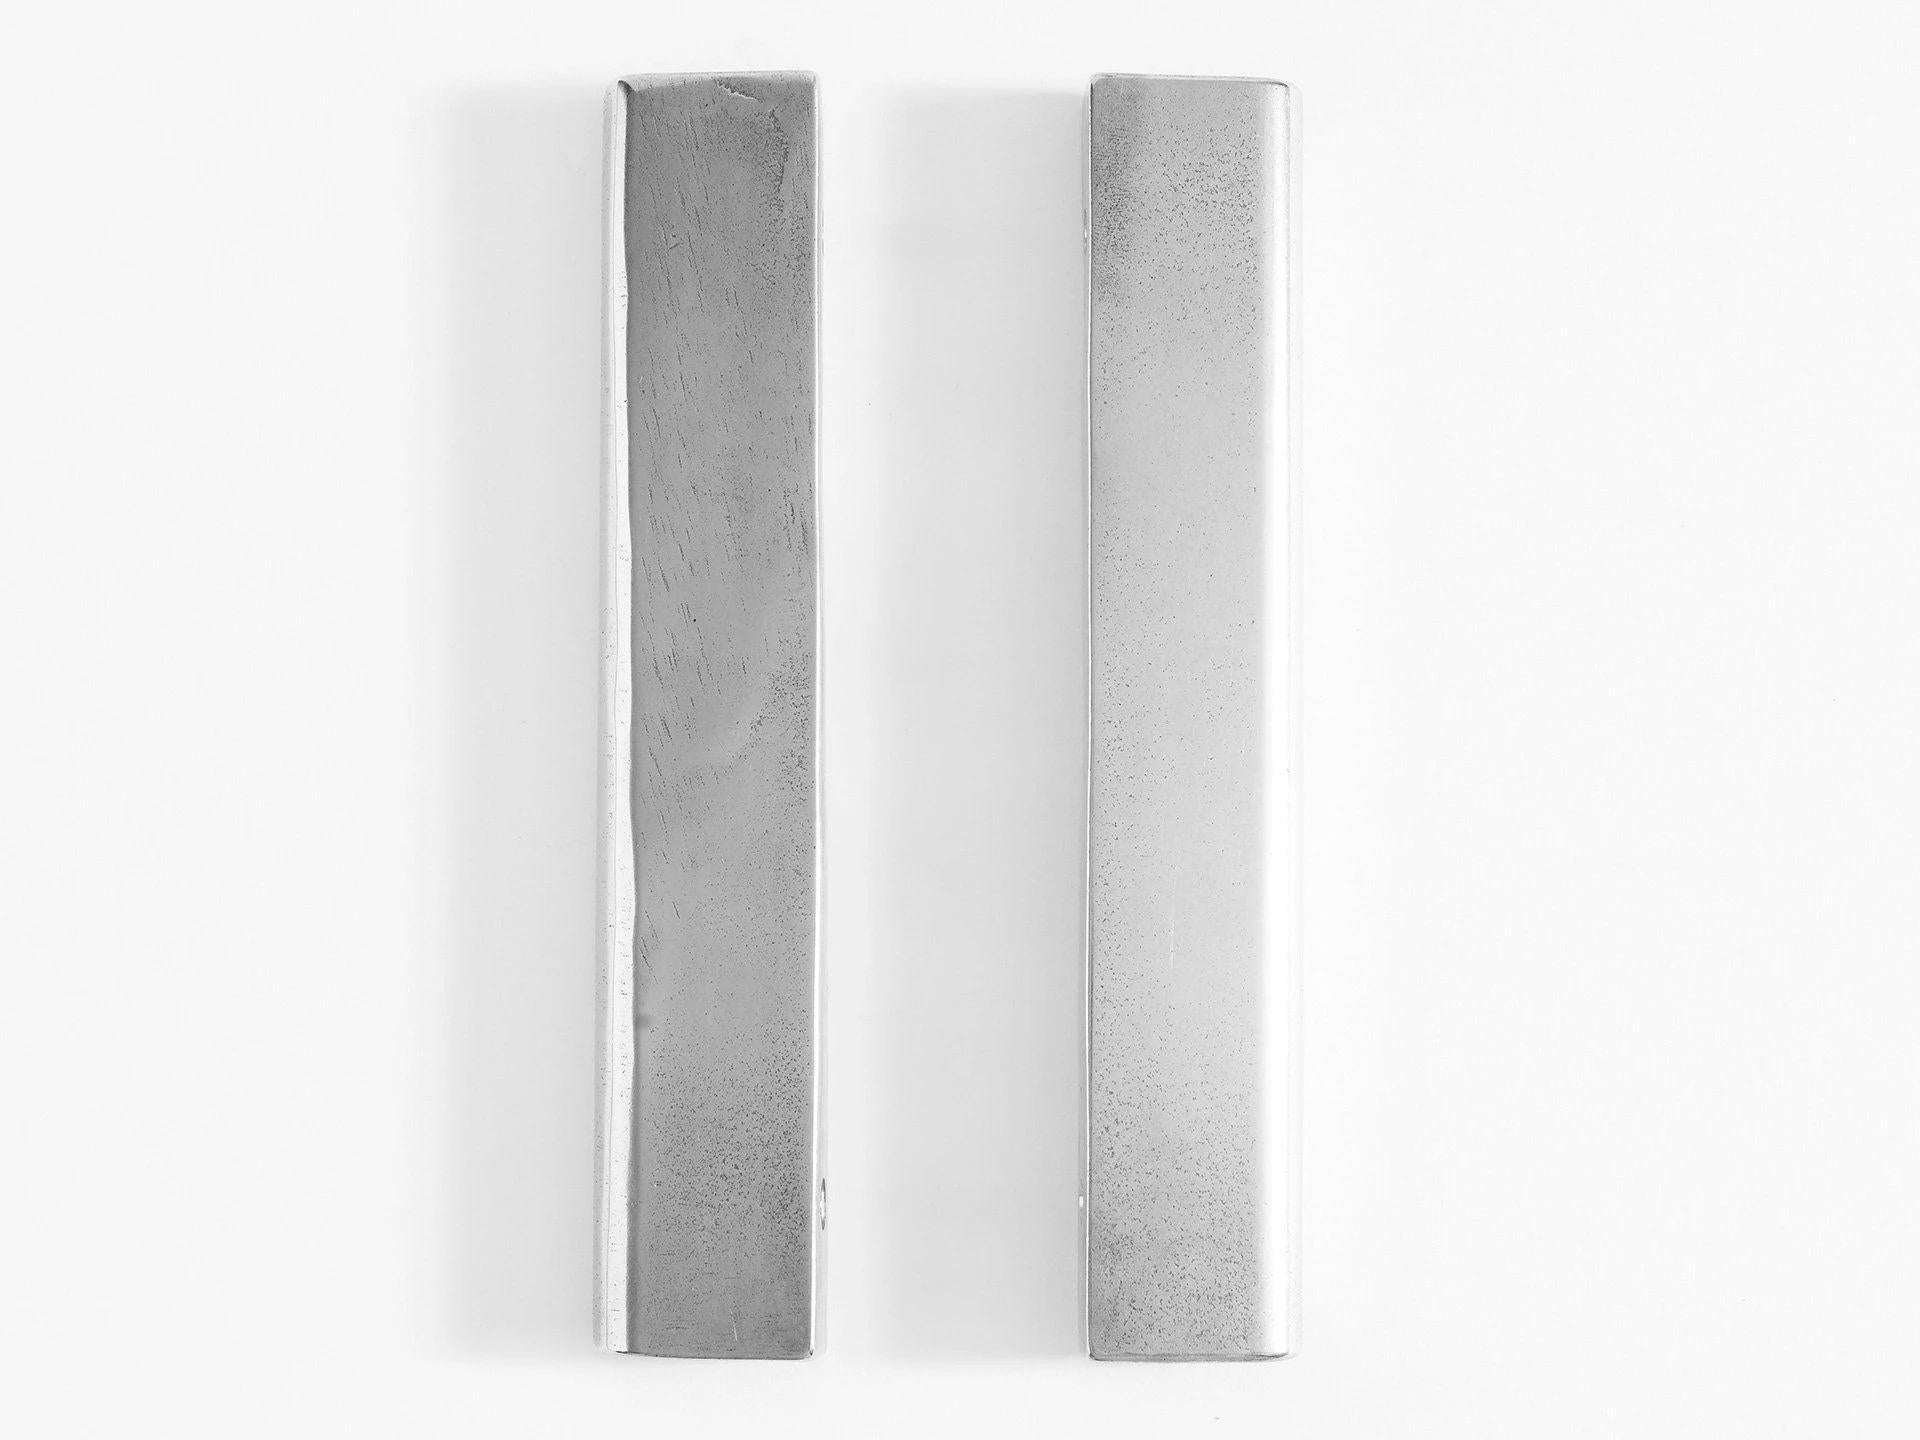 Set von 2 Aluminium-Kuppelgriffen aus Aluminium von Henry Wilson
Abmessungen: B 5 x T 3 x H 25 cm 
MATERIALIEN: Aluminium 

Jedes Stück wird im Sandgussverfahren hergestellt und mit Rumpeln bearbeitet. Ziehgriffe aus Aluminium werden in kleinen